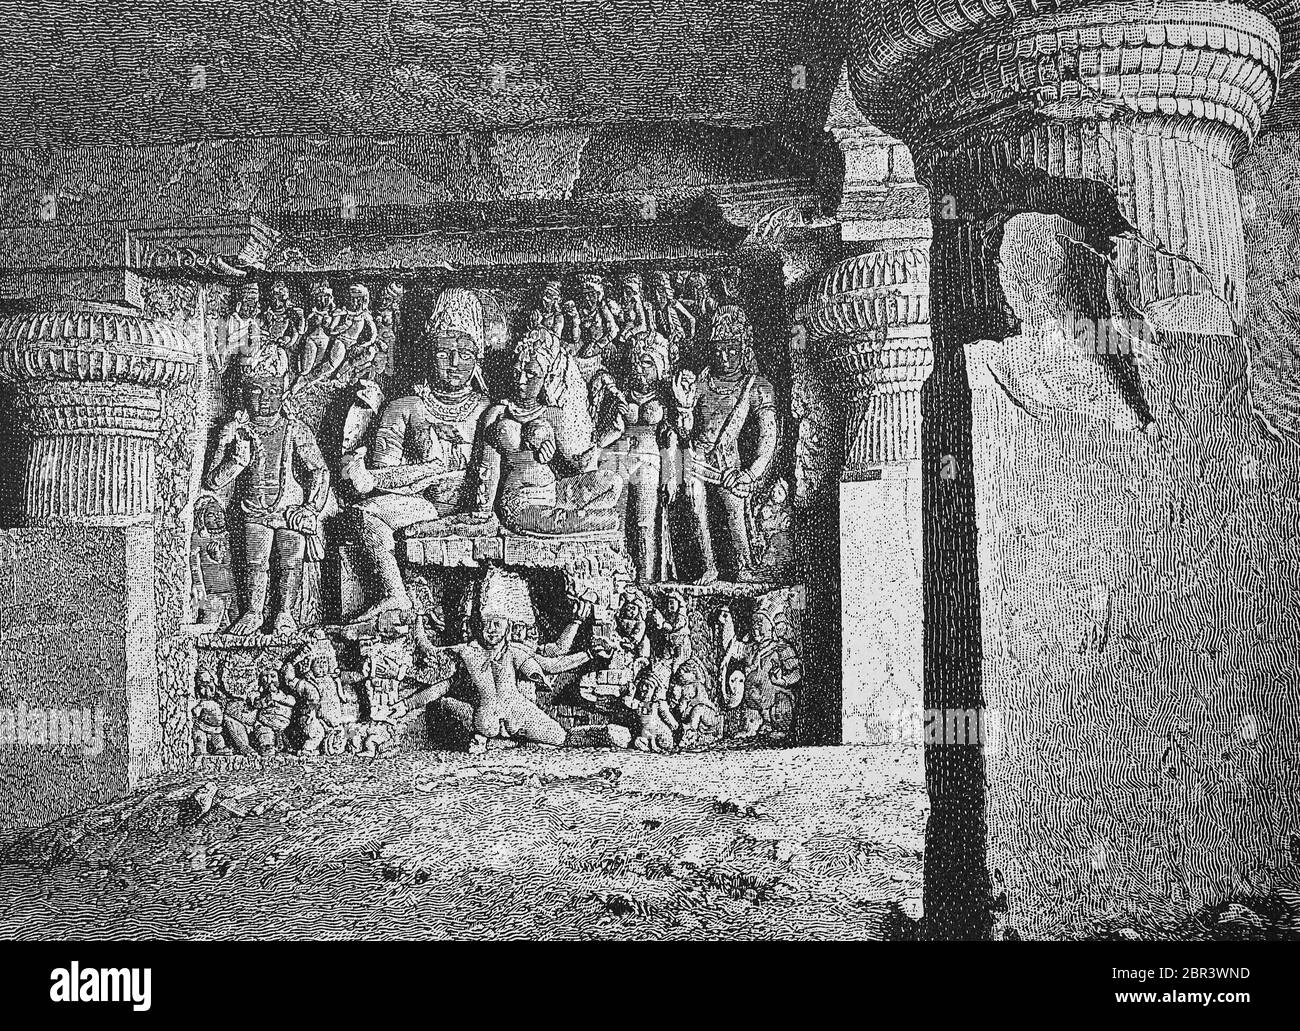 Die Ellora Höhlen im Zustand von Maharastra sind - neben denen von Ajanta - die meistbesuchten Attraktionen von Indien. Seit 1983 zählt der Komplex aus 34 Höhlentempeln, die von der UNESCO zum Weltkulturerbe erklärt wurden [ / die Ellora-Höhlen im Bundesstaat Maharastra gehört – neben denen von Ajanta – zu den meistbesuchten Sehenswürdigkeiten Indiens. Seit dem Jahr 1983 zählt der Komplex aus 34 buddhistischen, industriellen und jainistischen Höhlentempeln zum UNESCO-Weltkulturerbe[, historisch, historisch, digital verbesserte Reproduktion eines Originals aus dem 19. Jahrhundert / digitale Reprodu Stockfoto